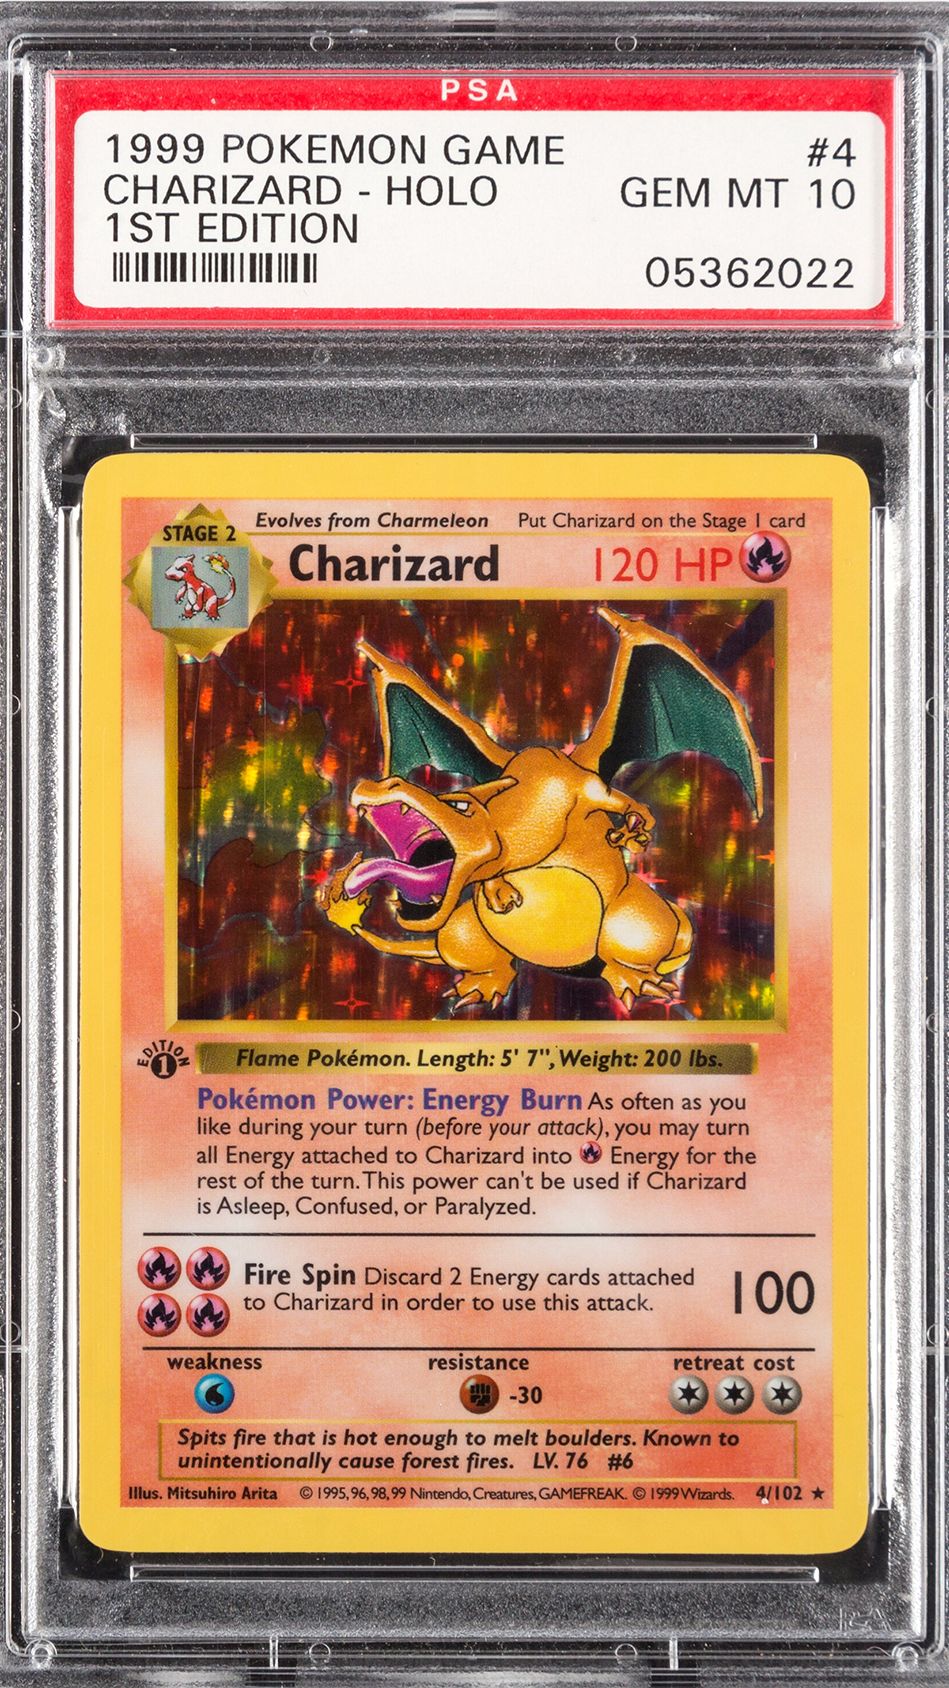 Rare Pokémon Charizard card sells for $336,000 | CNN